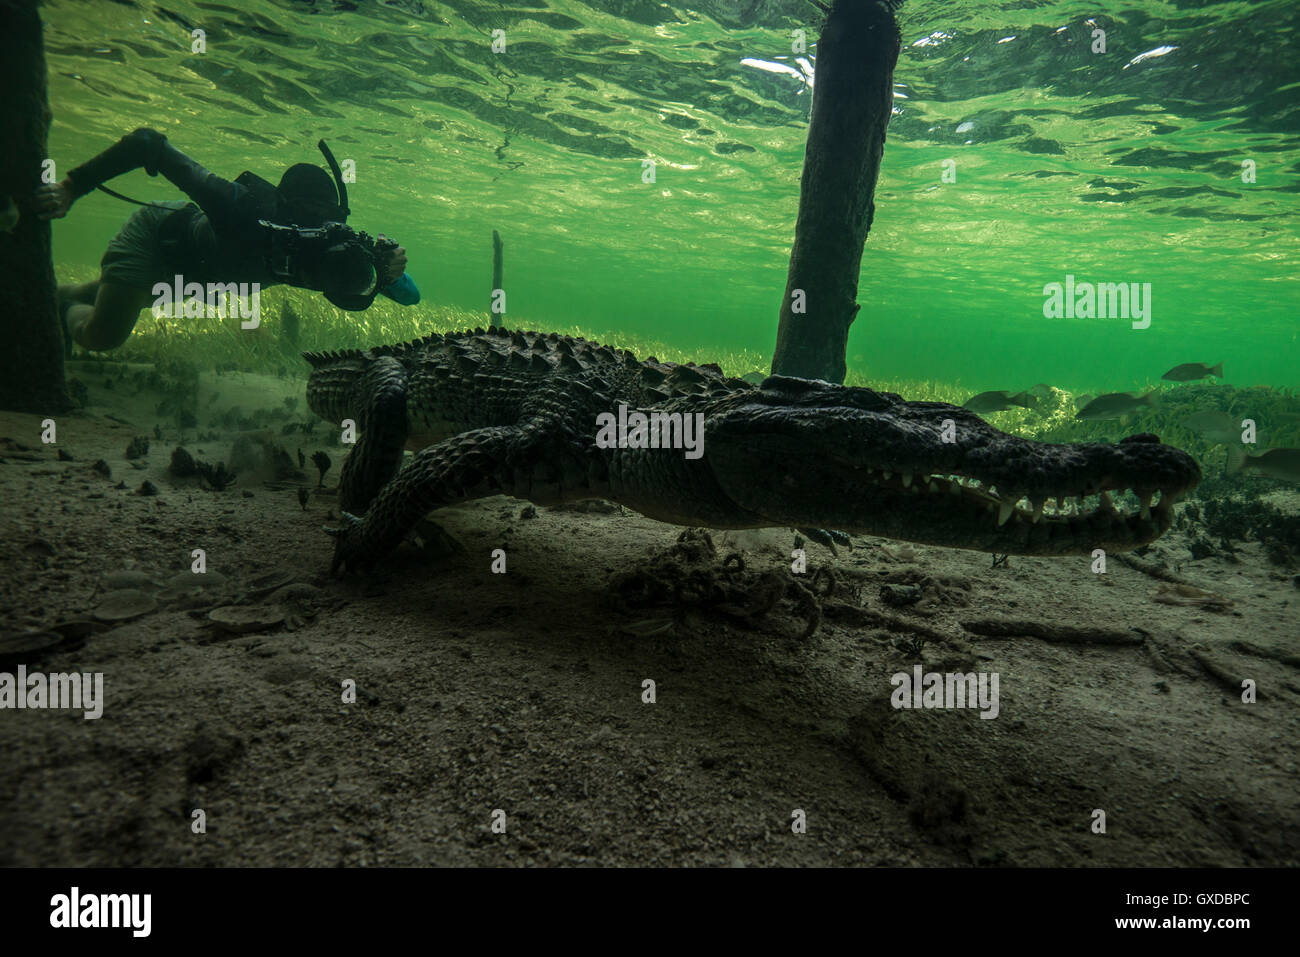 Fotografo subacqueo a caccia di coccodrillo americano (Crocodylus acutus) sui fondali marini a Chinchorro banche, Messico Foto Stock